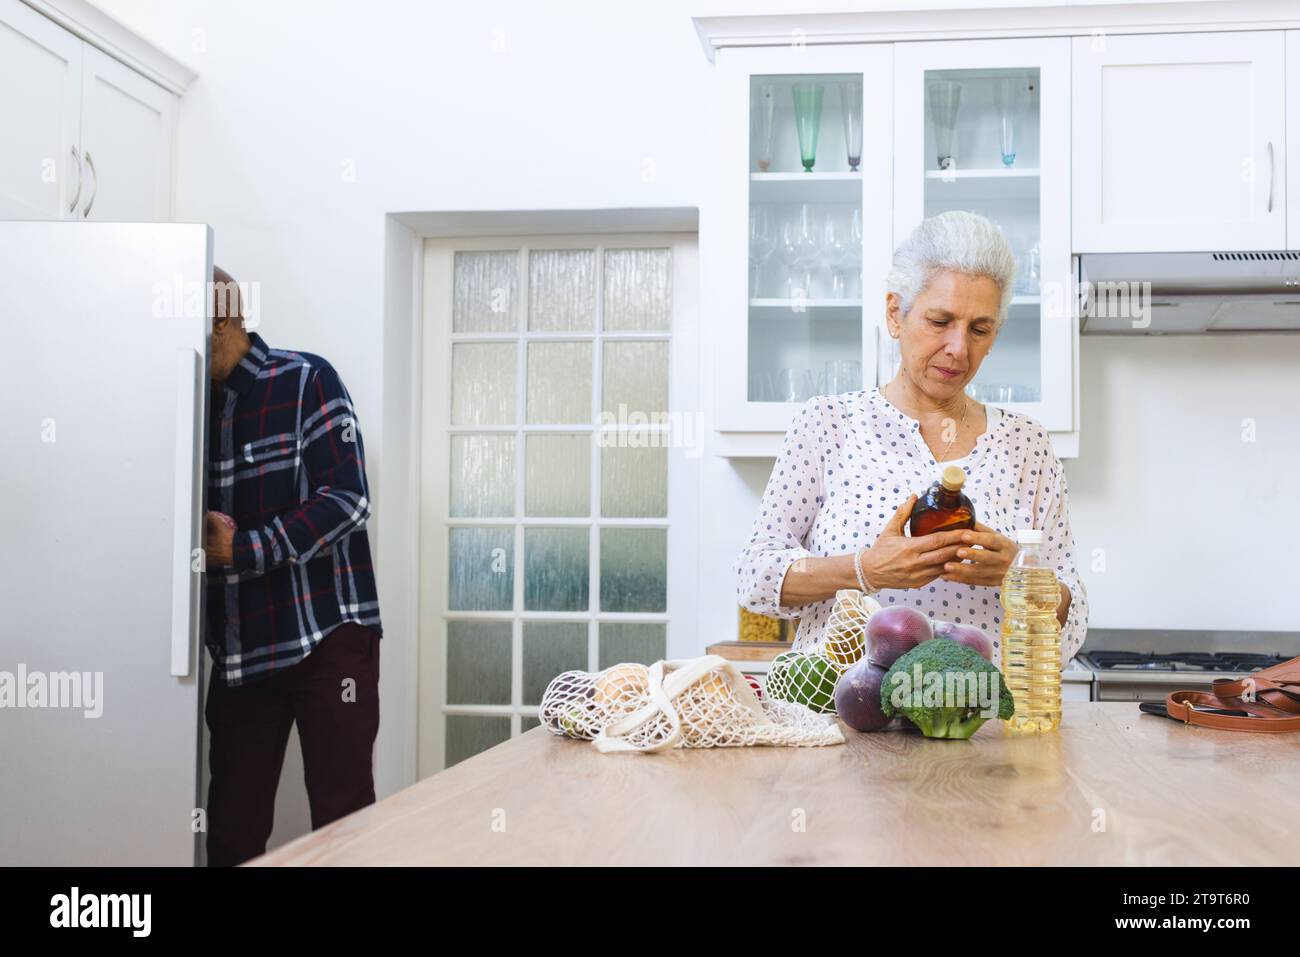 Diverse Seniorenpaare packen Lebensmittel in der Küche aus. Lebensstil, Ruhestand, Seniorenleben, Einkaufen, Zweisamkeit und häusliches Leben, unverändert. Stockfoto